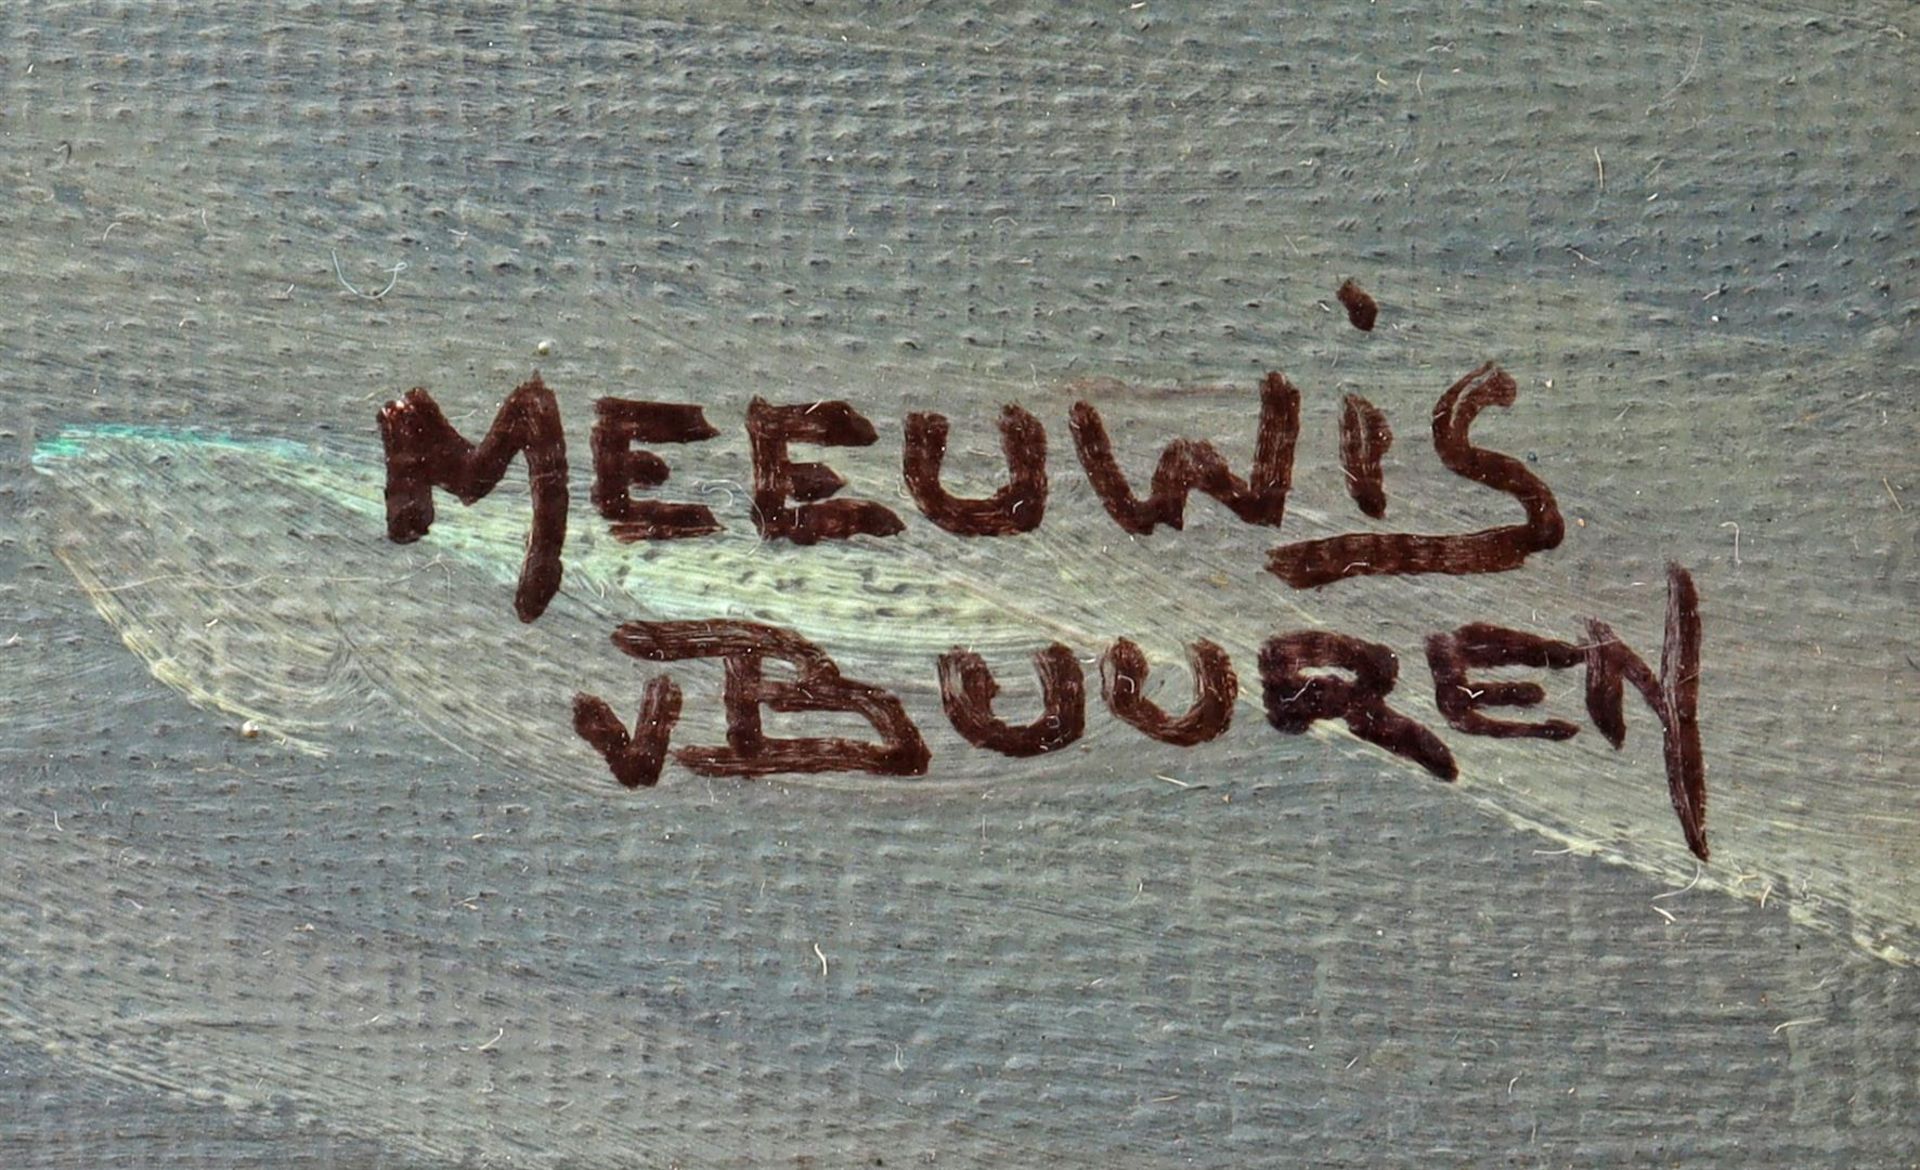 Meeuwis van Buuren (1902-1992) - Image 4 of 5